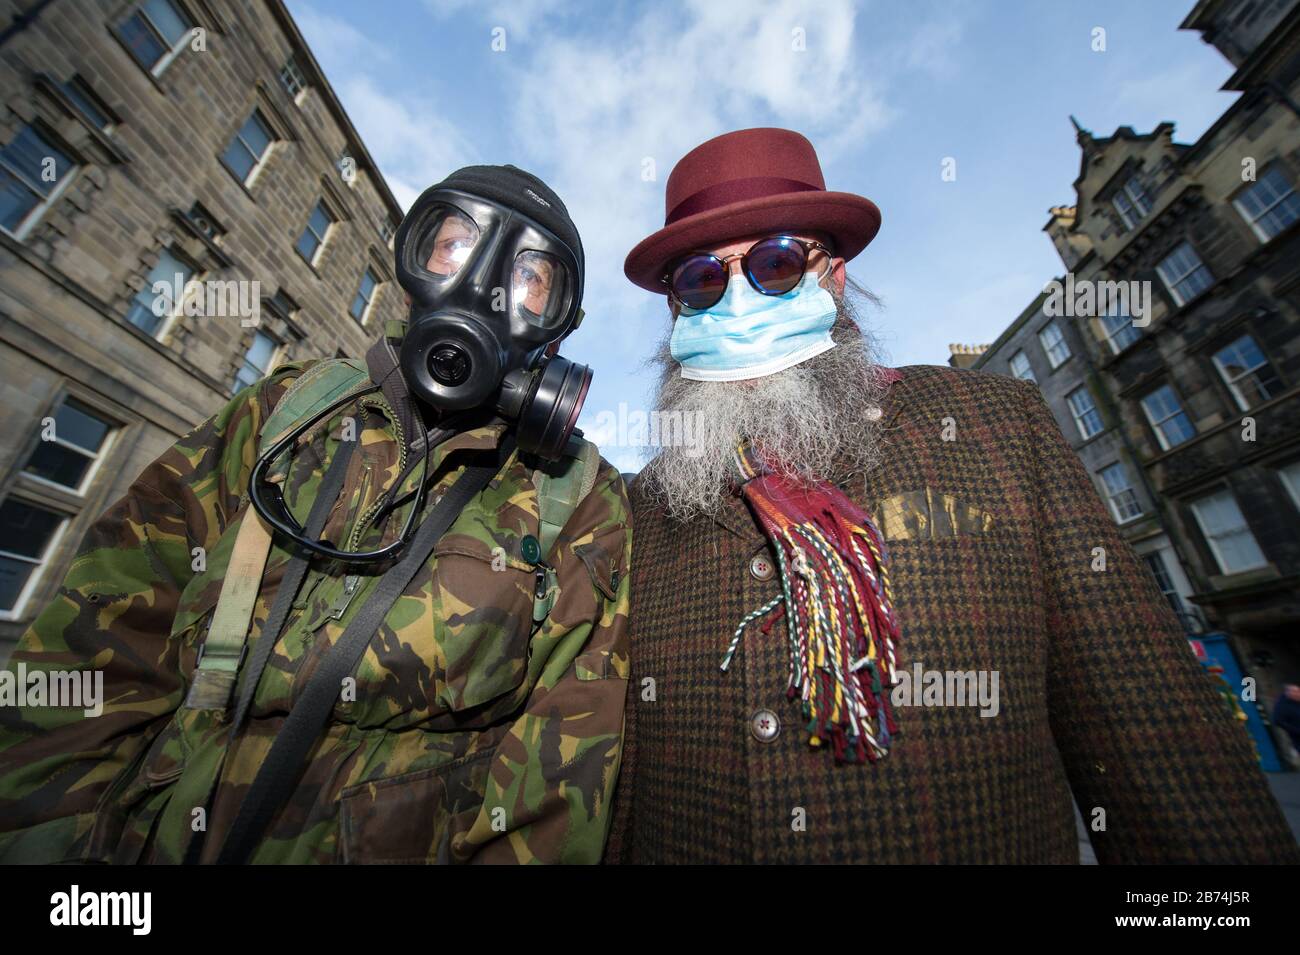 Edimburgo, Reino Unido. 13 de marzo de 2020. En la foto: (Izquierda) Alan Wilson; (derecha) Jimmy Crombie, usando equipo de protección personal anticipando la pandemia que está a punto de golpear Escocia. Crédito: Colin Fisher/Alamy Live News Foto de stock